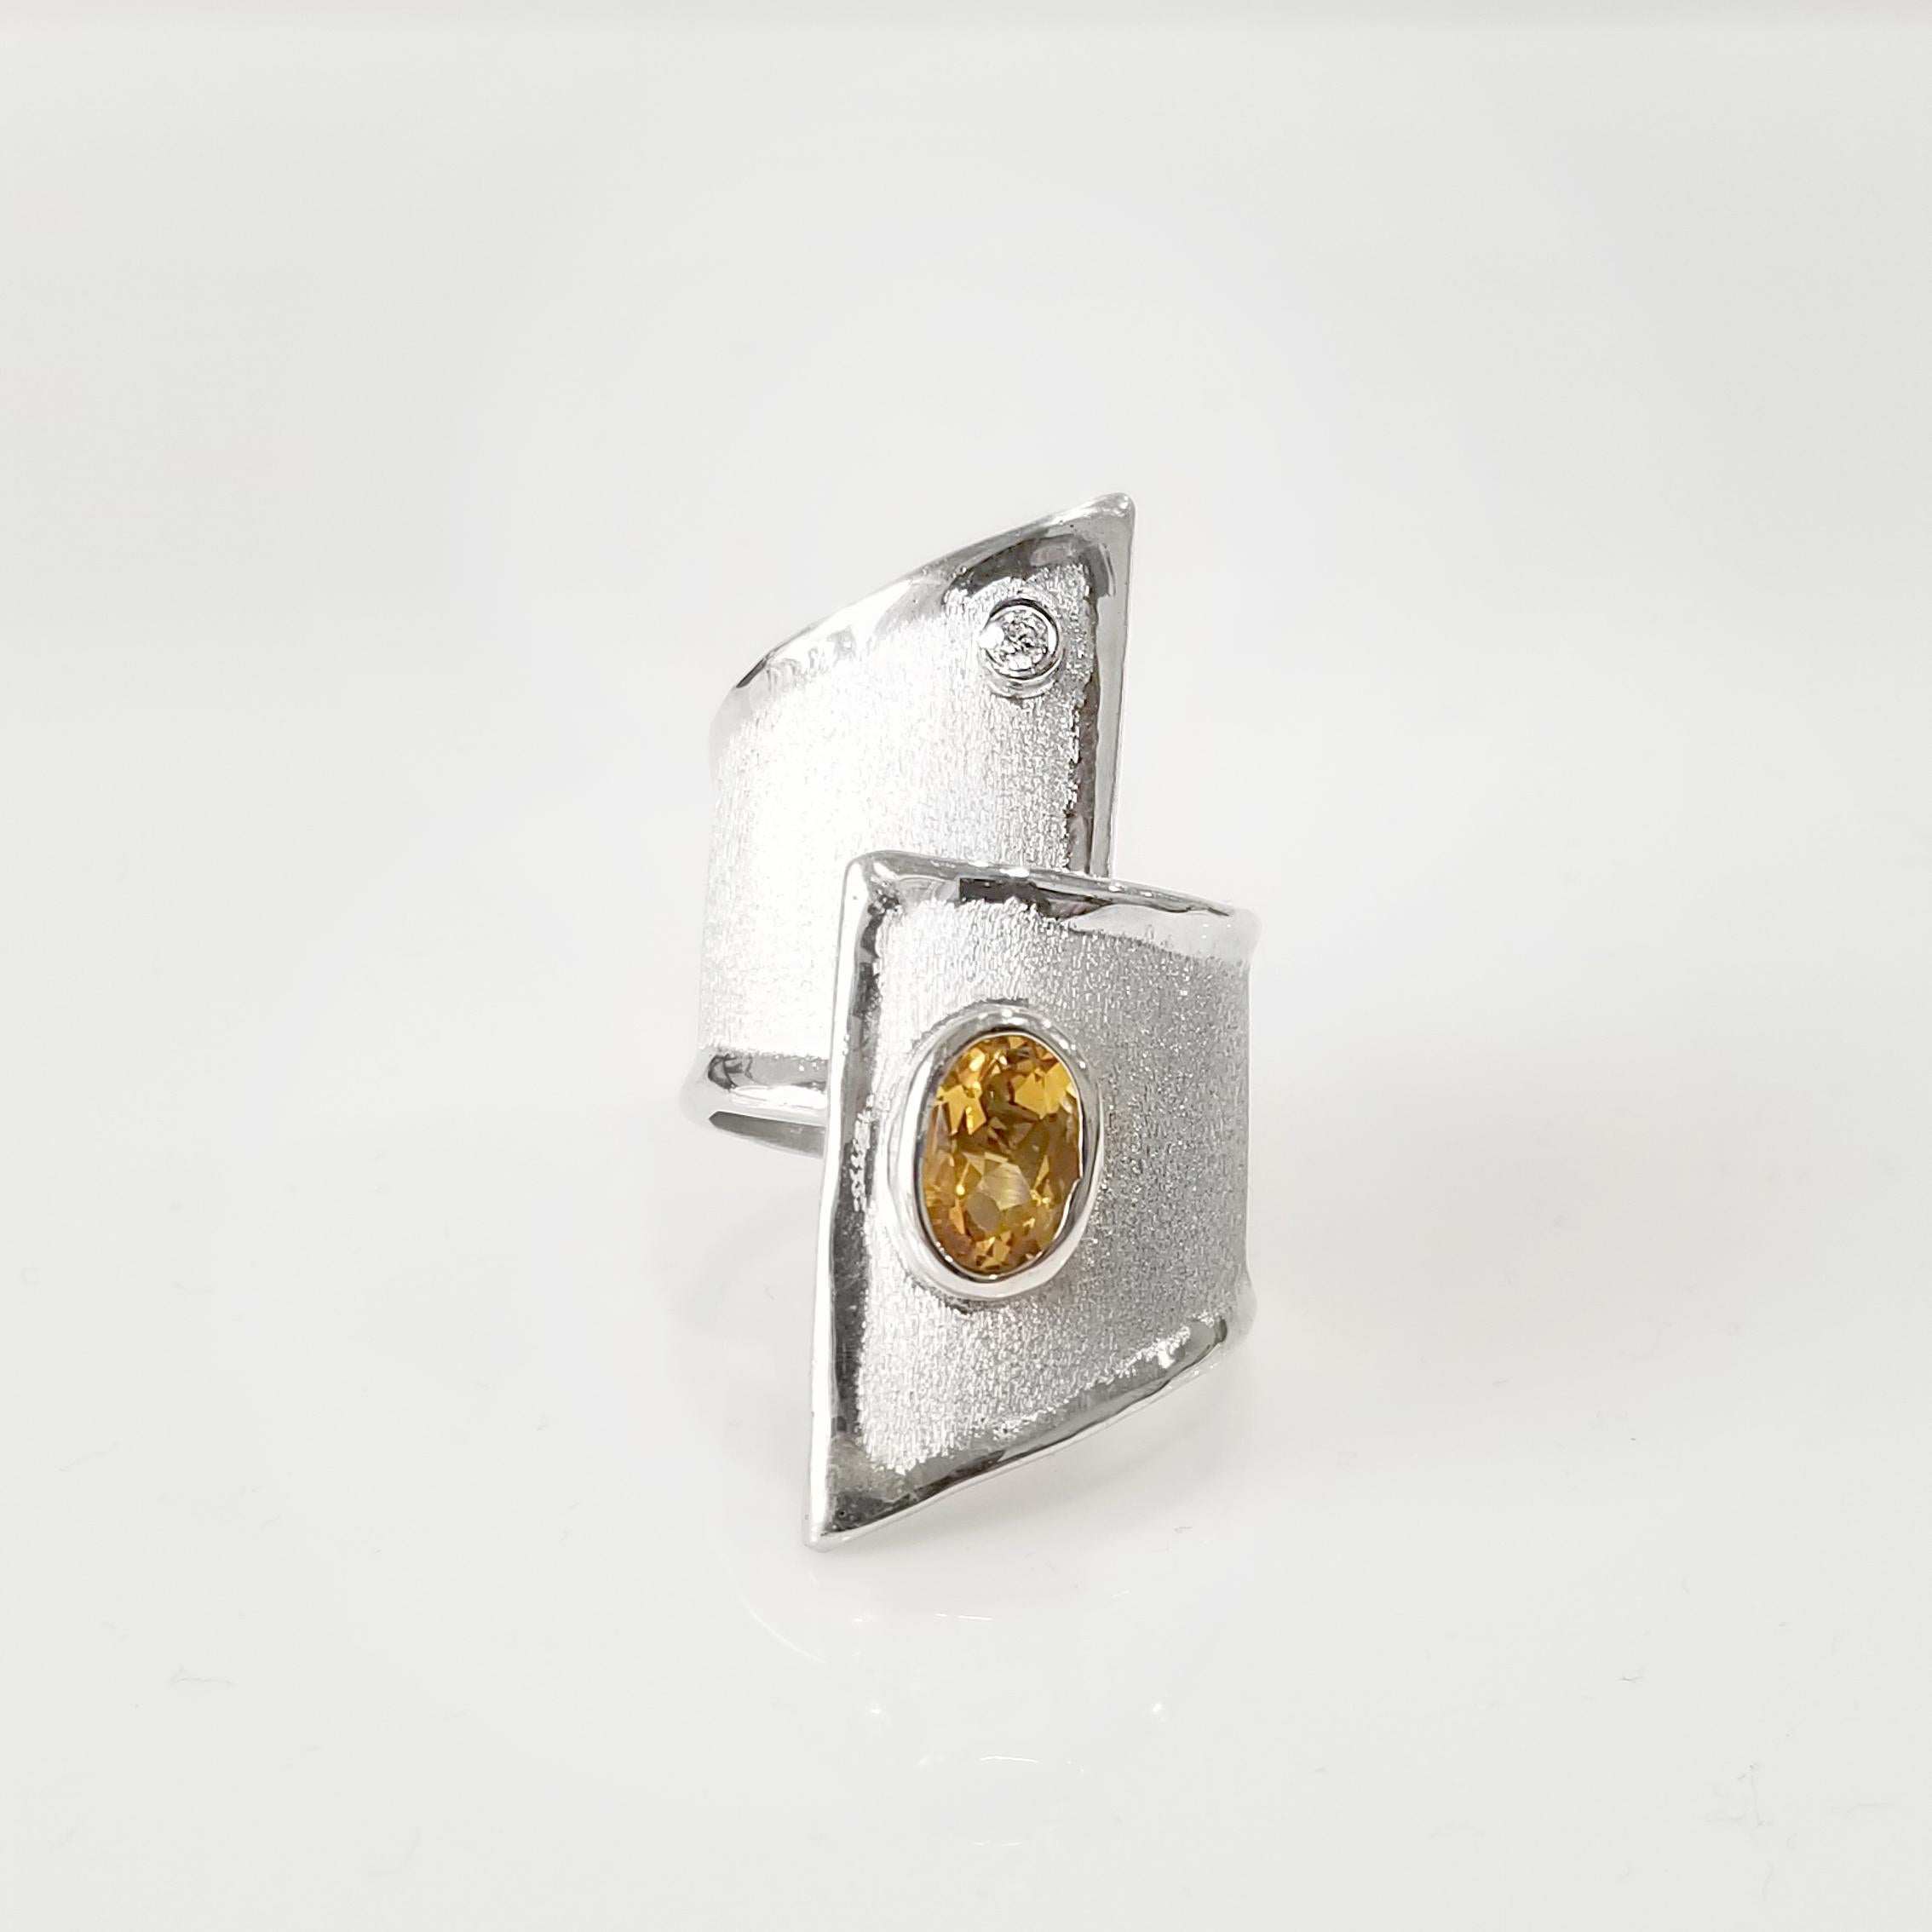 Sie bewundern den handgefertigten Ring Yianni Creations von Ammos Collection, der aus reinem 950er Silber gefertigt und zum Schutz vor den Elementen mit Palladium beschichtet ist. Dieser verstellbare Ring besteht aus einem ovalen Citrin von 1,25